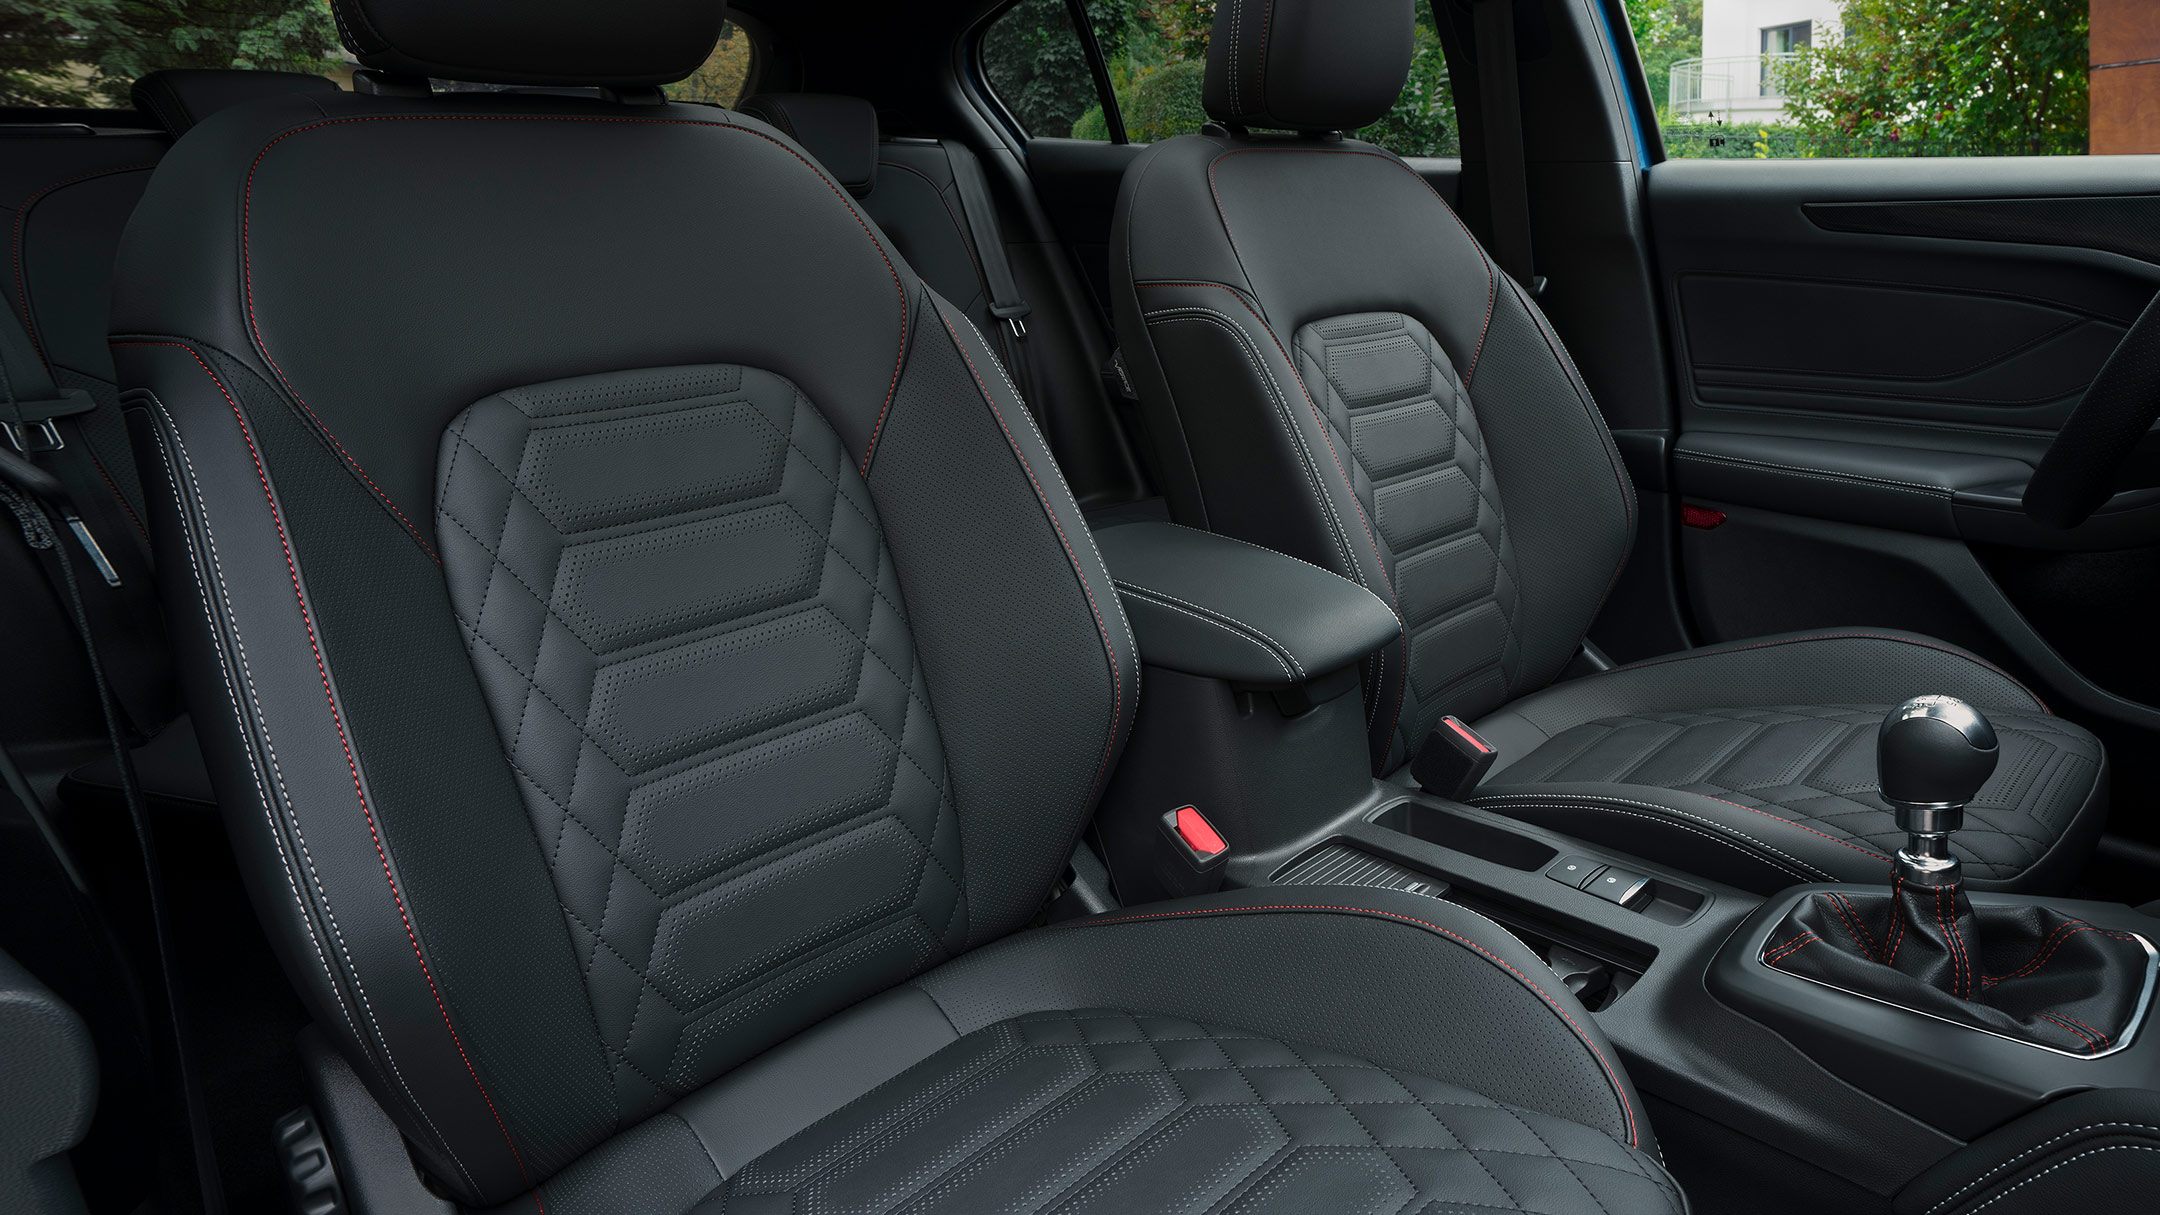 Ford Focus interior - Seats